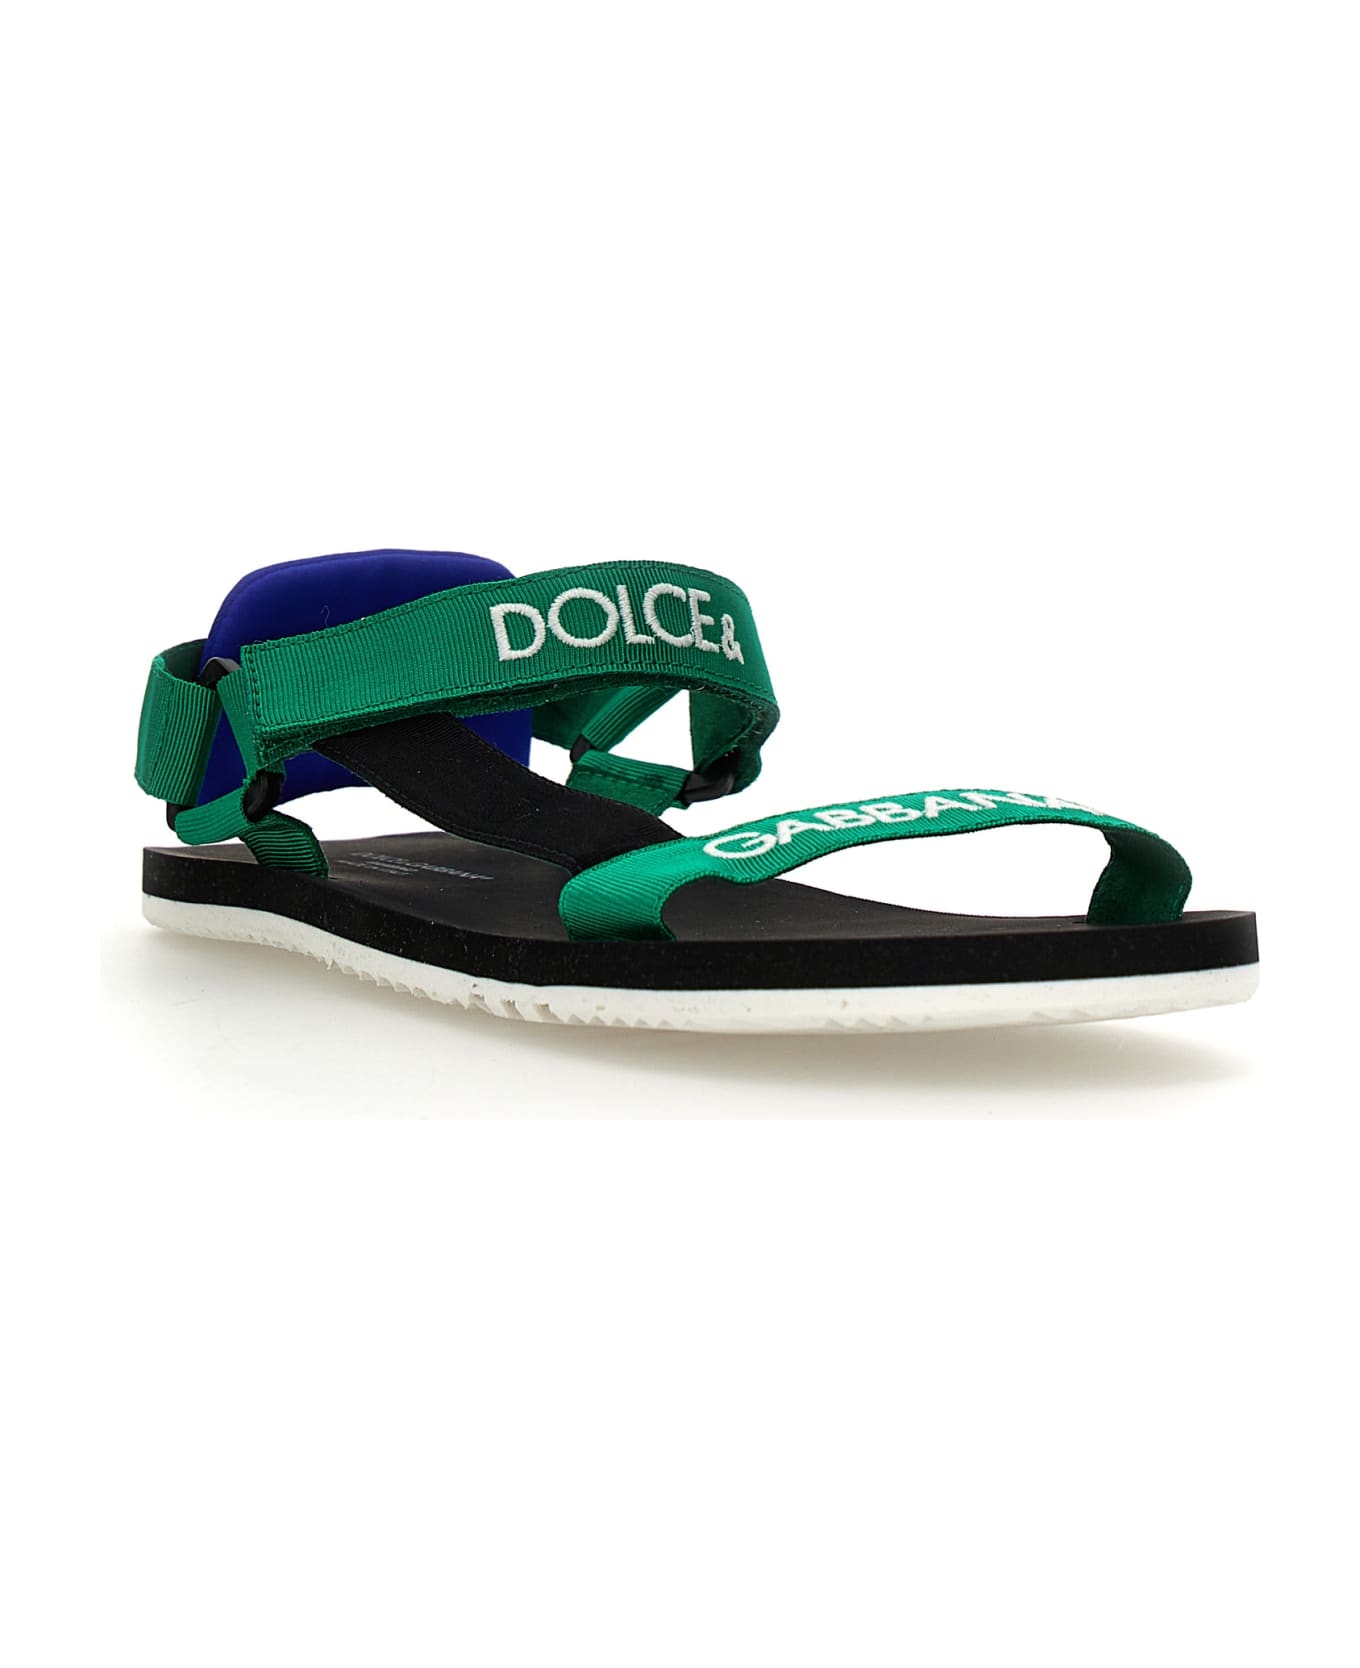 Dolce & Gabbana Logo Sandals - Green シューズ